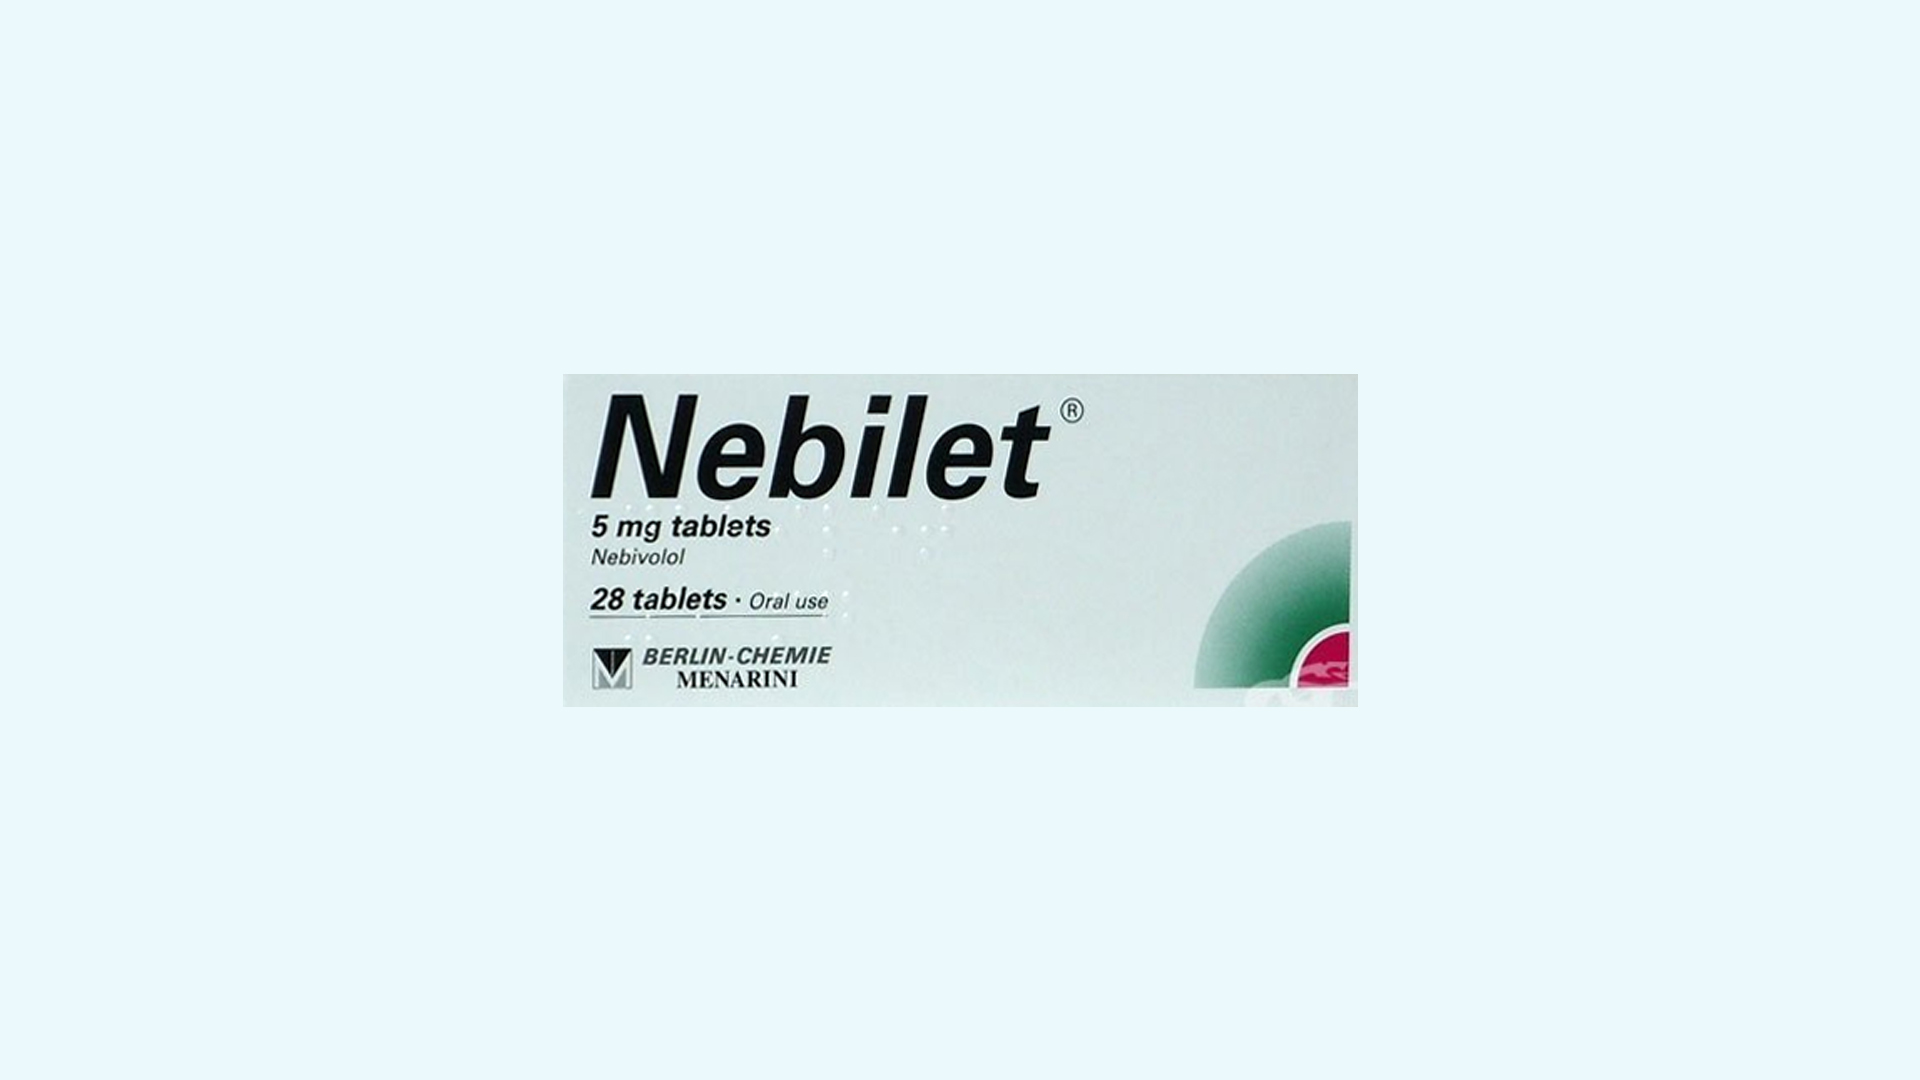 Nebilet – informacje o leku, dawkowanie oraz przeciwwskazania